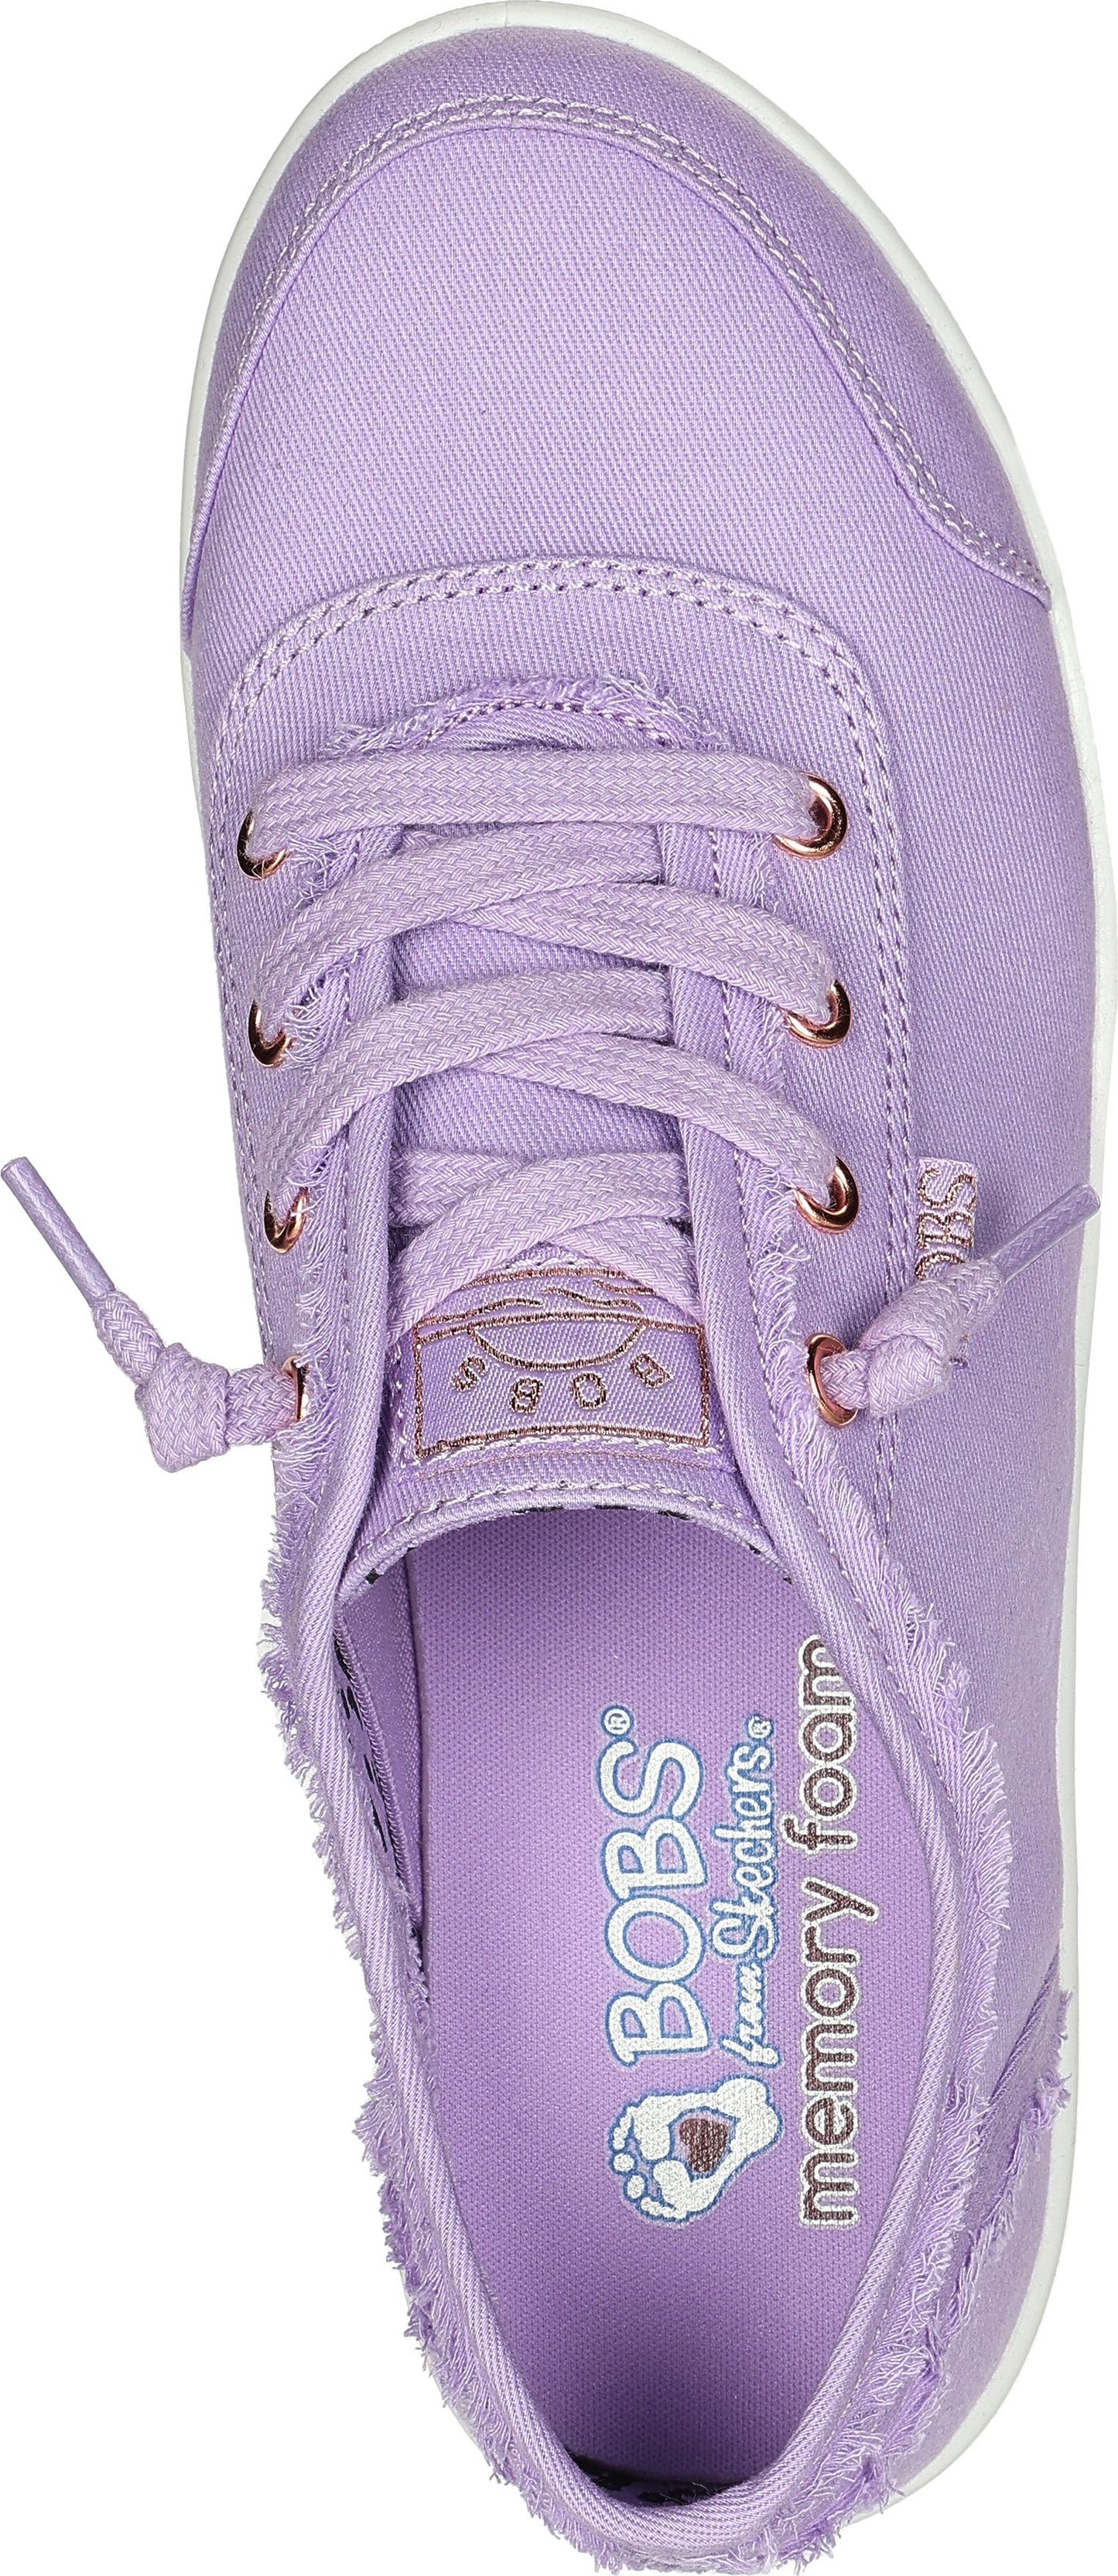 Bobs B Cute Lilac – Shoes Quarks